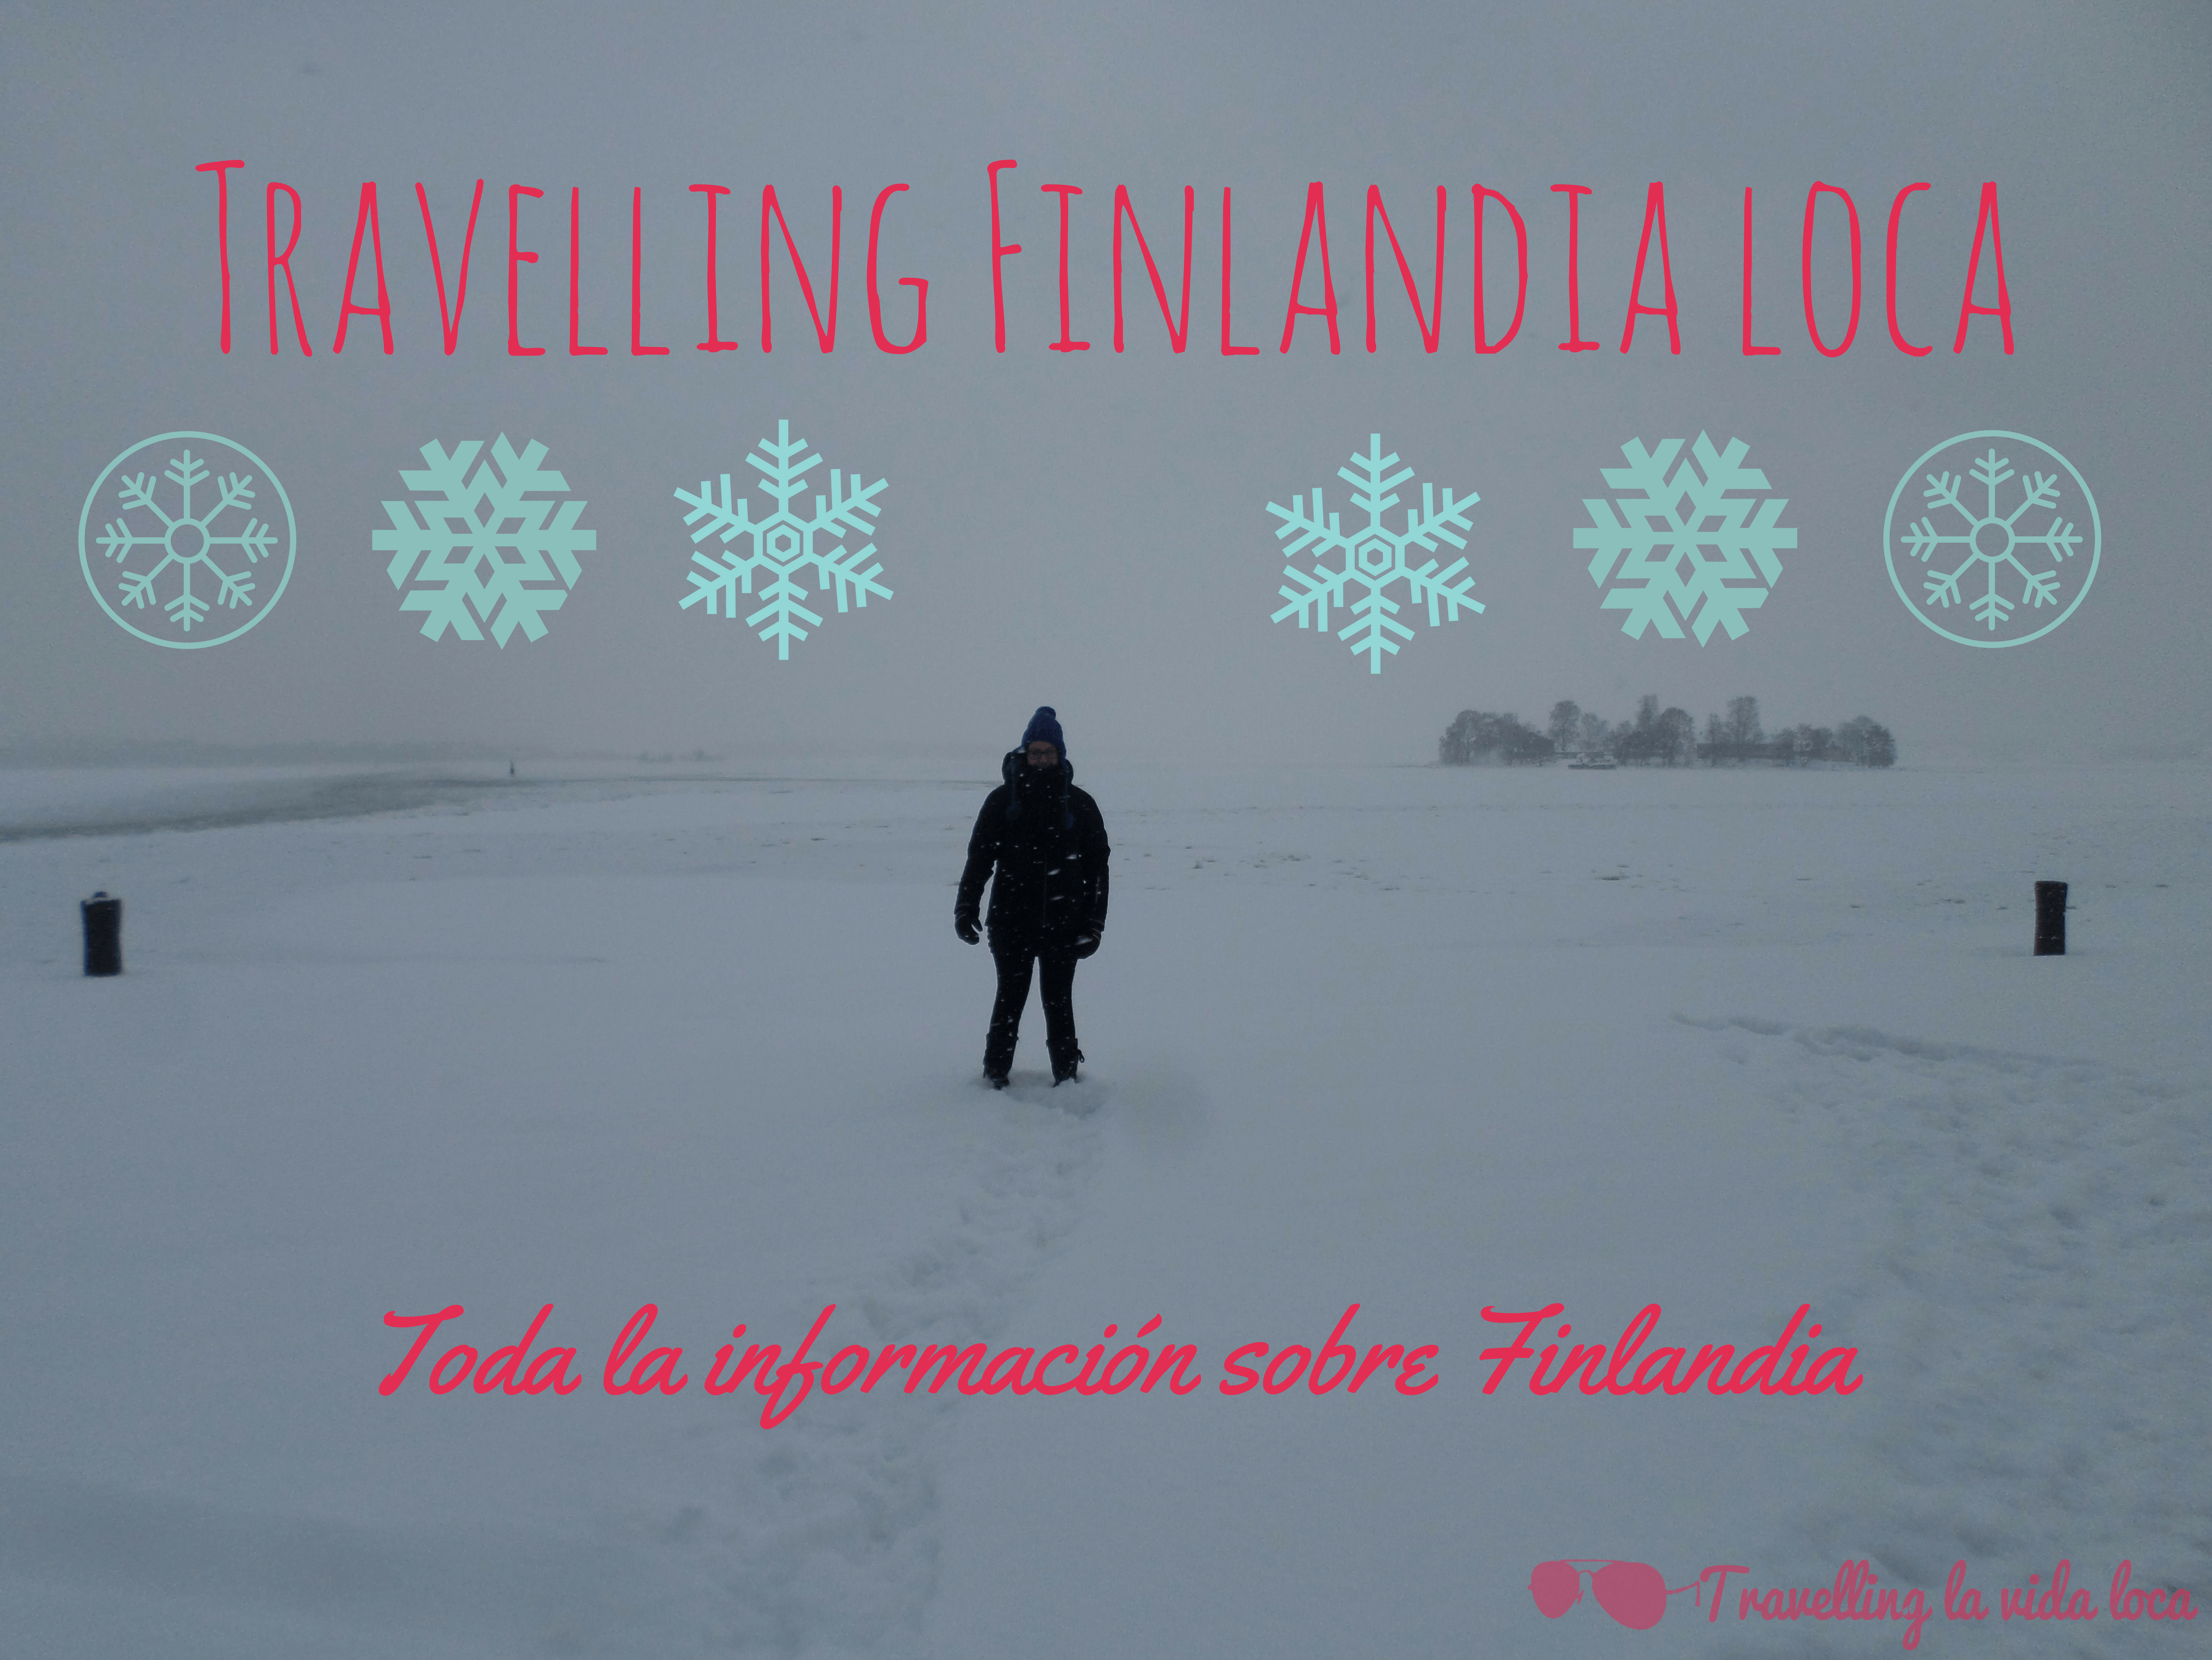 Travelling Finlandia loca